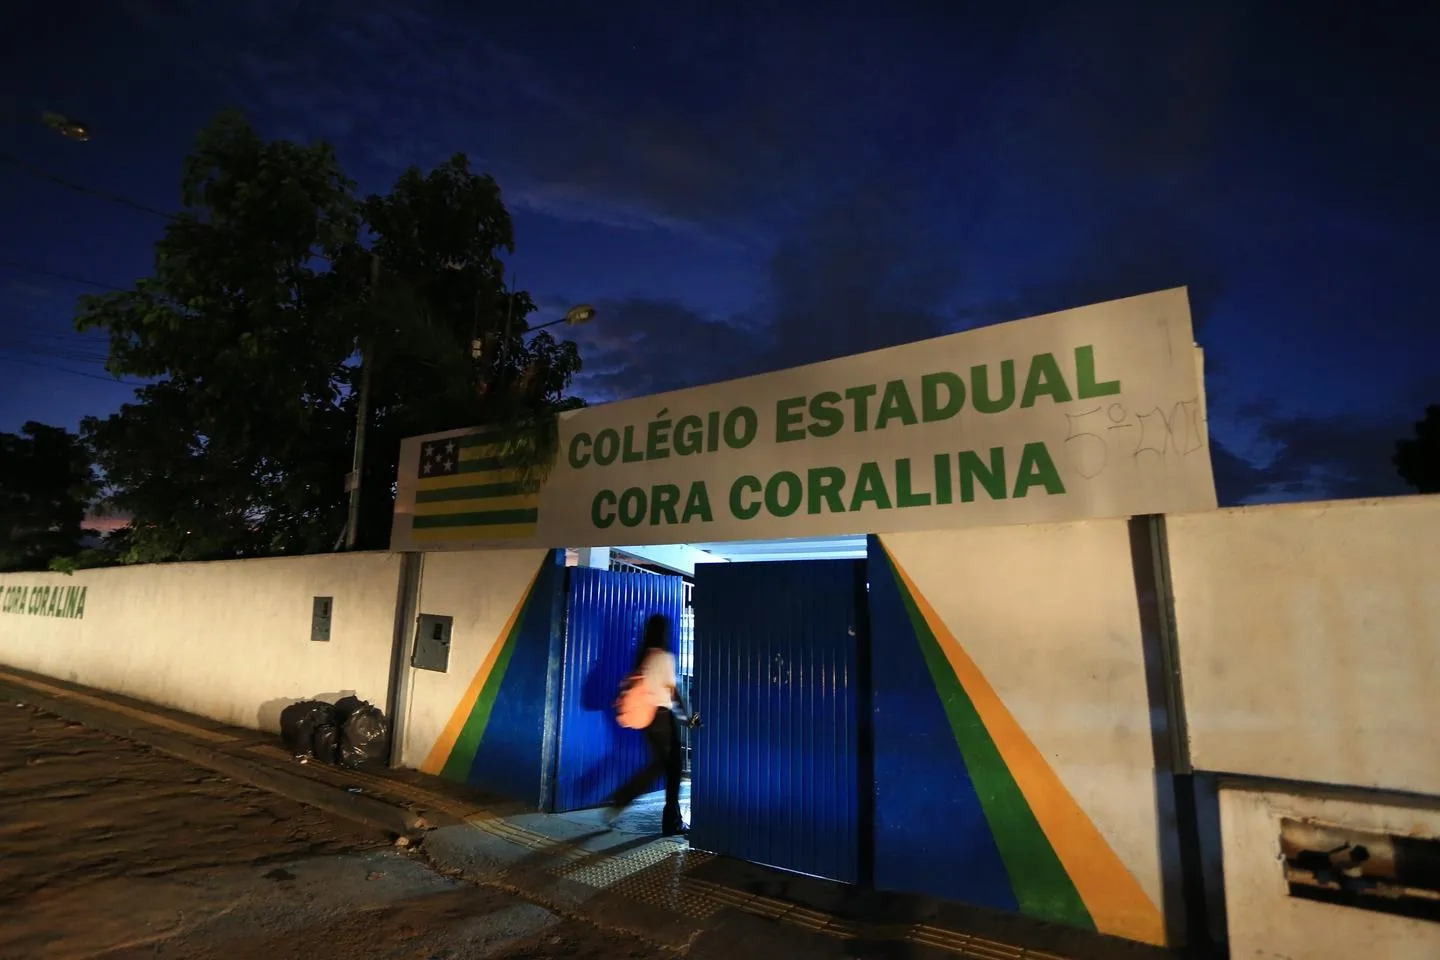 Por que as ações de educação desabaram hoje - Brazil Journal